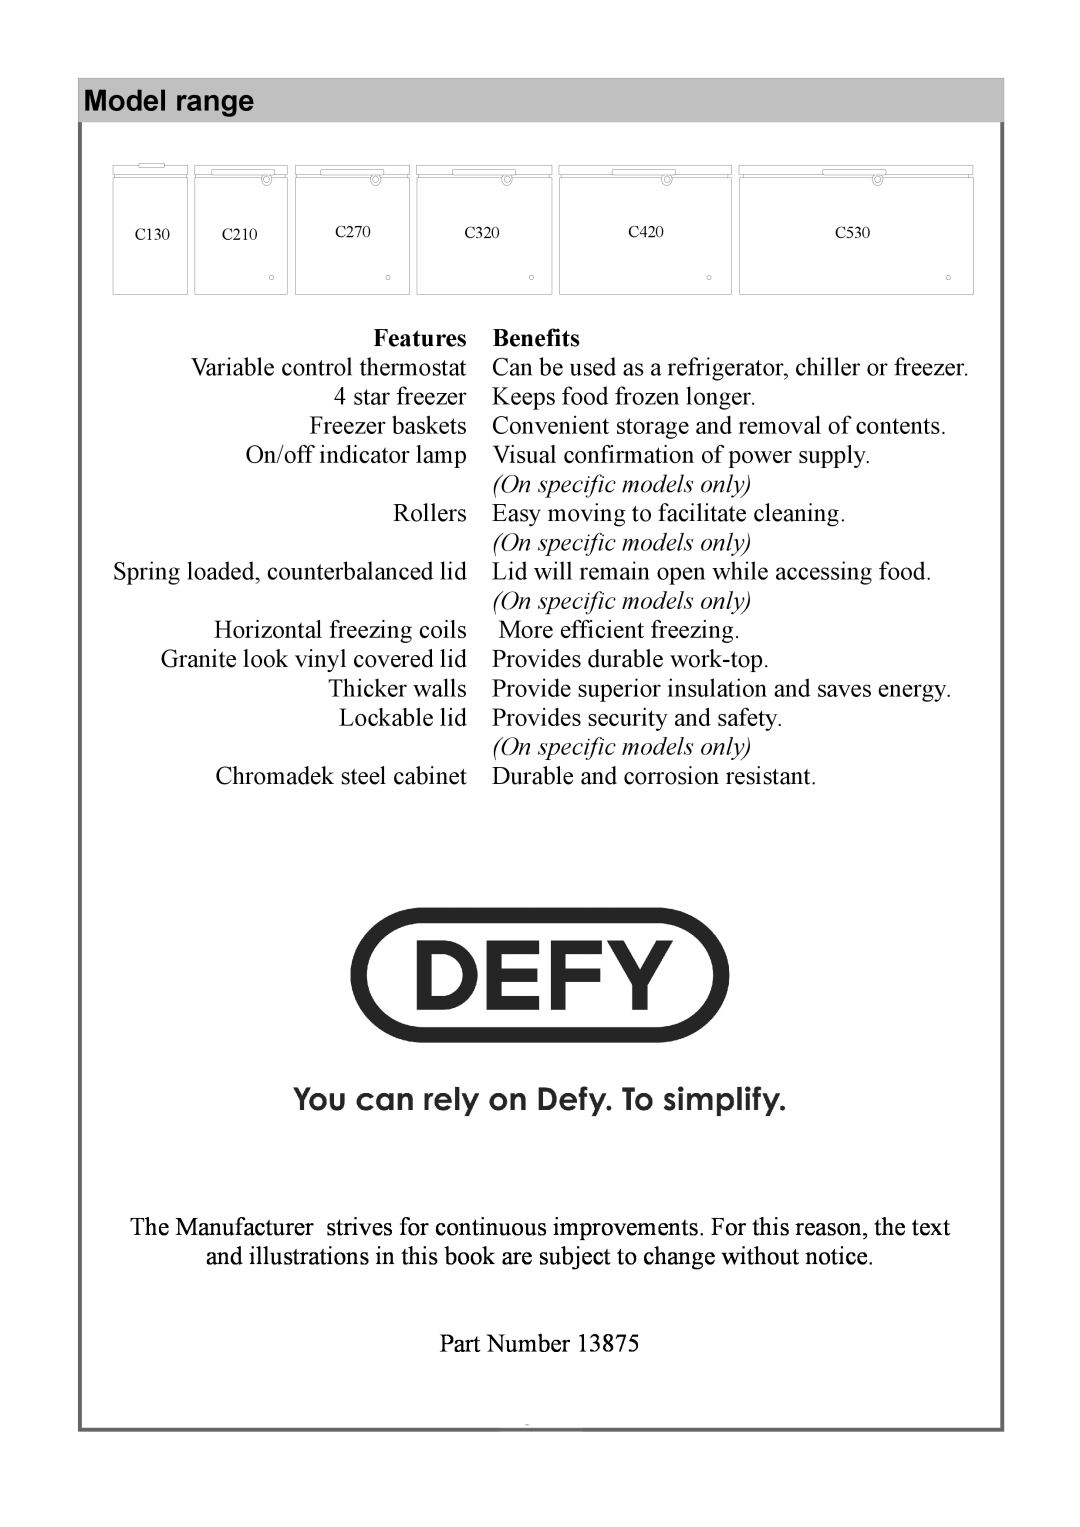 Defy Appliances 13875 owner manual Model range, On specific models only 